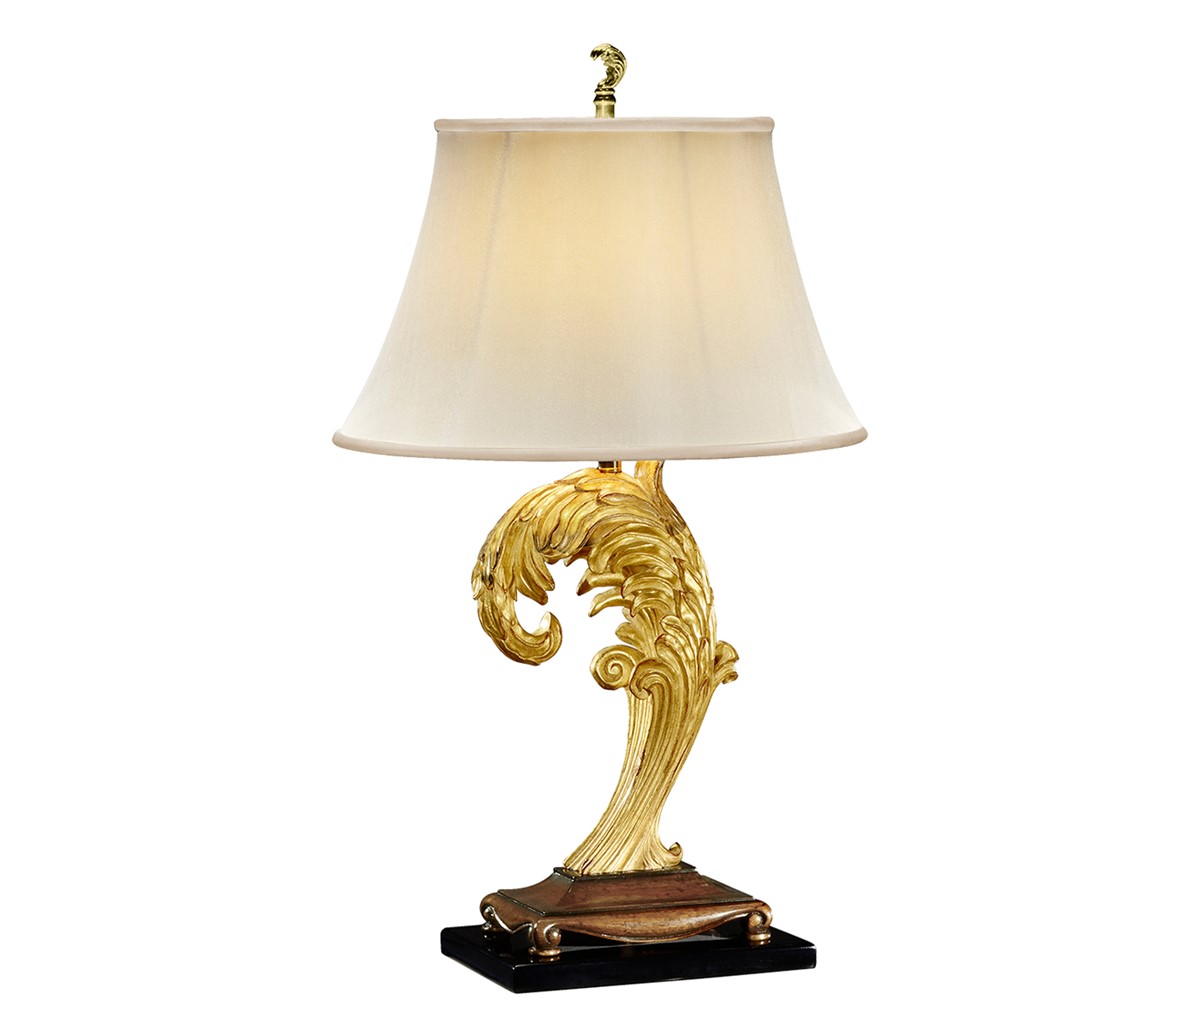 Asymmetric gilded leaf table lamp